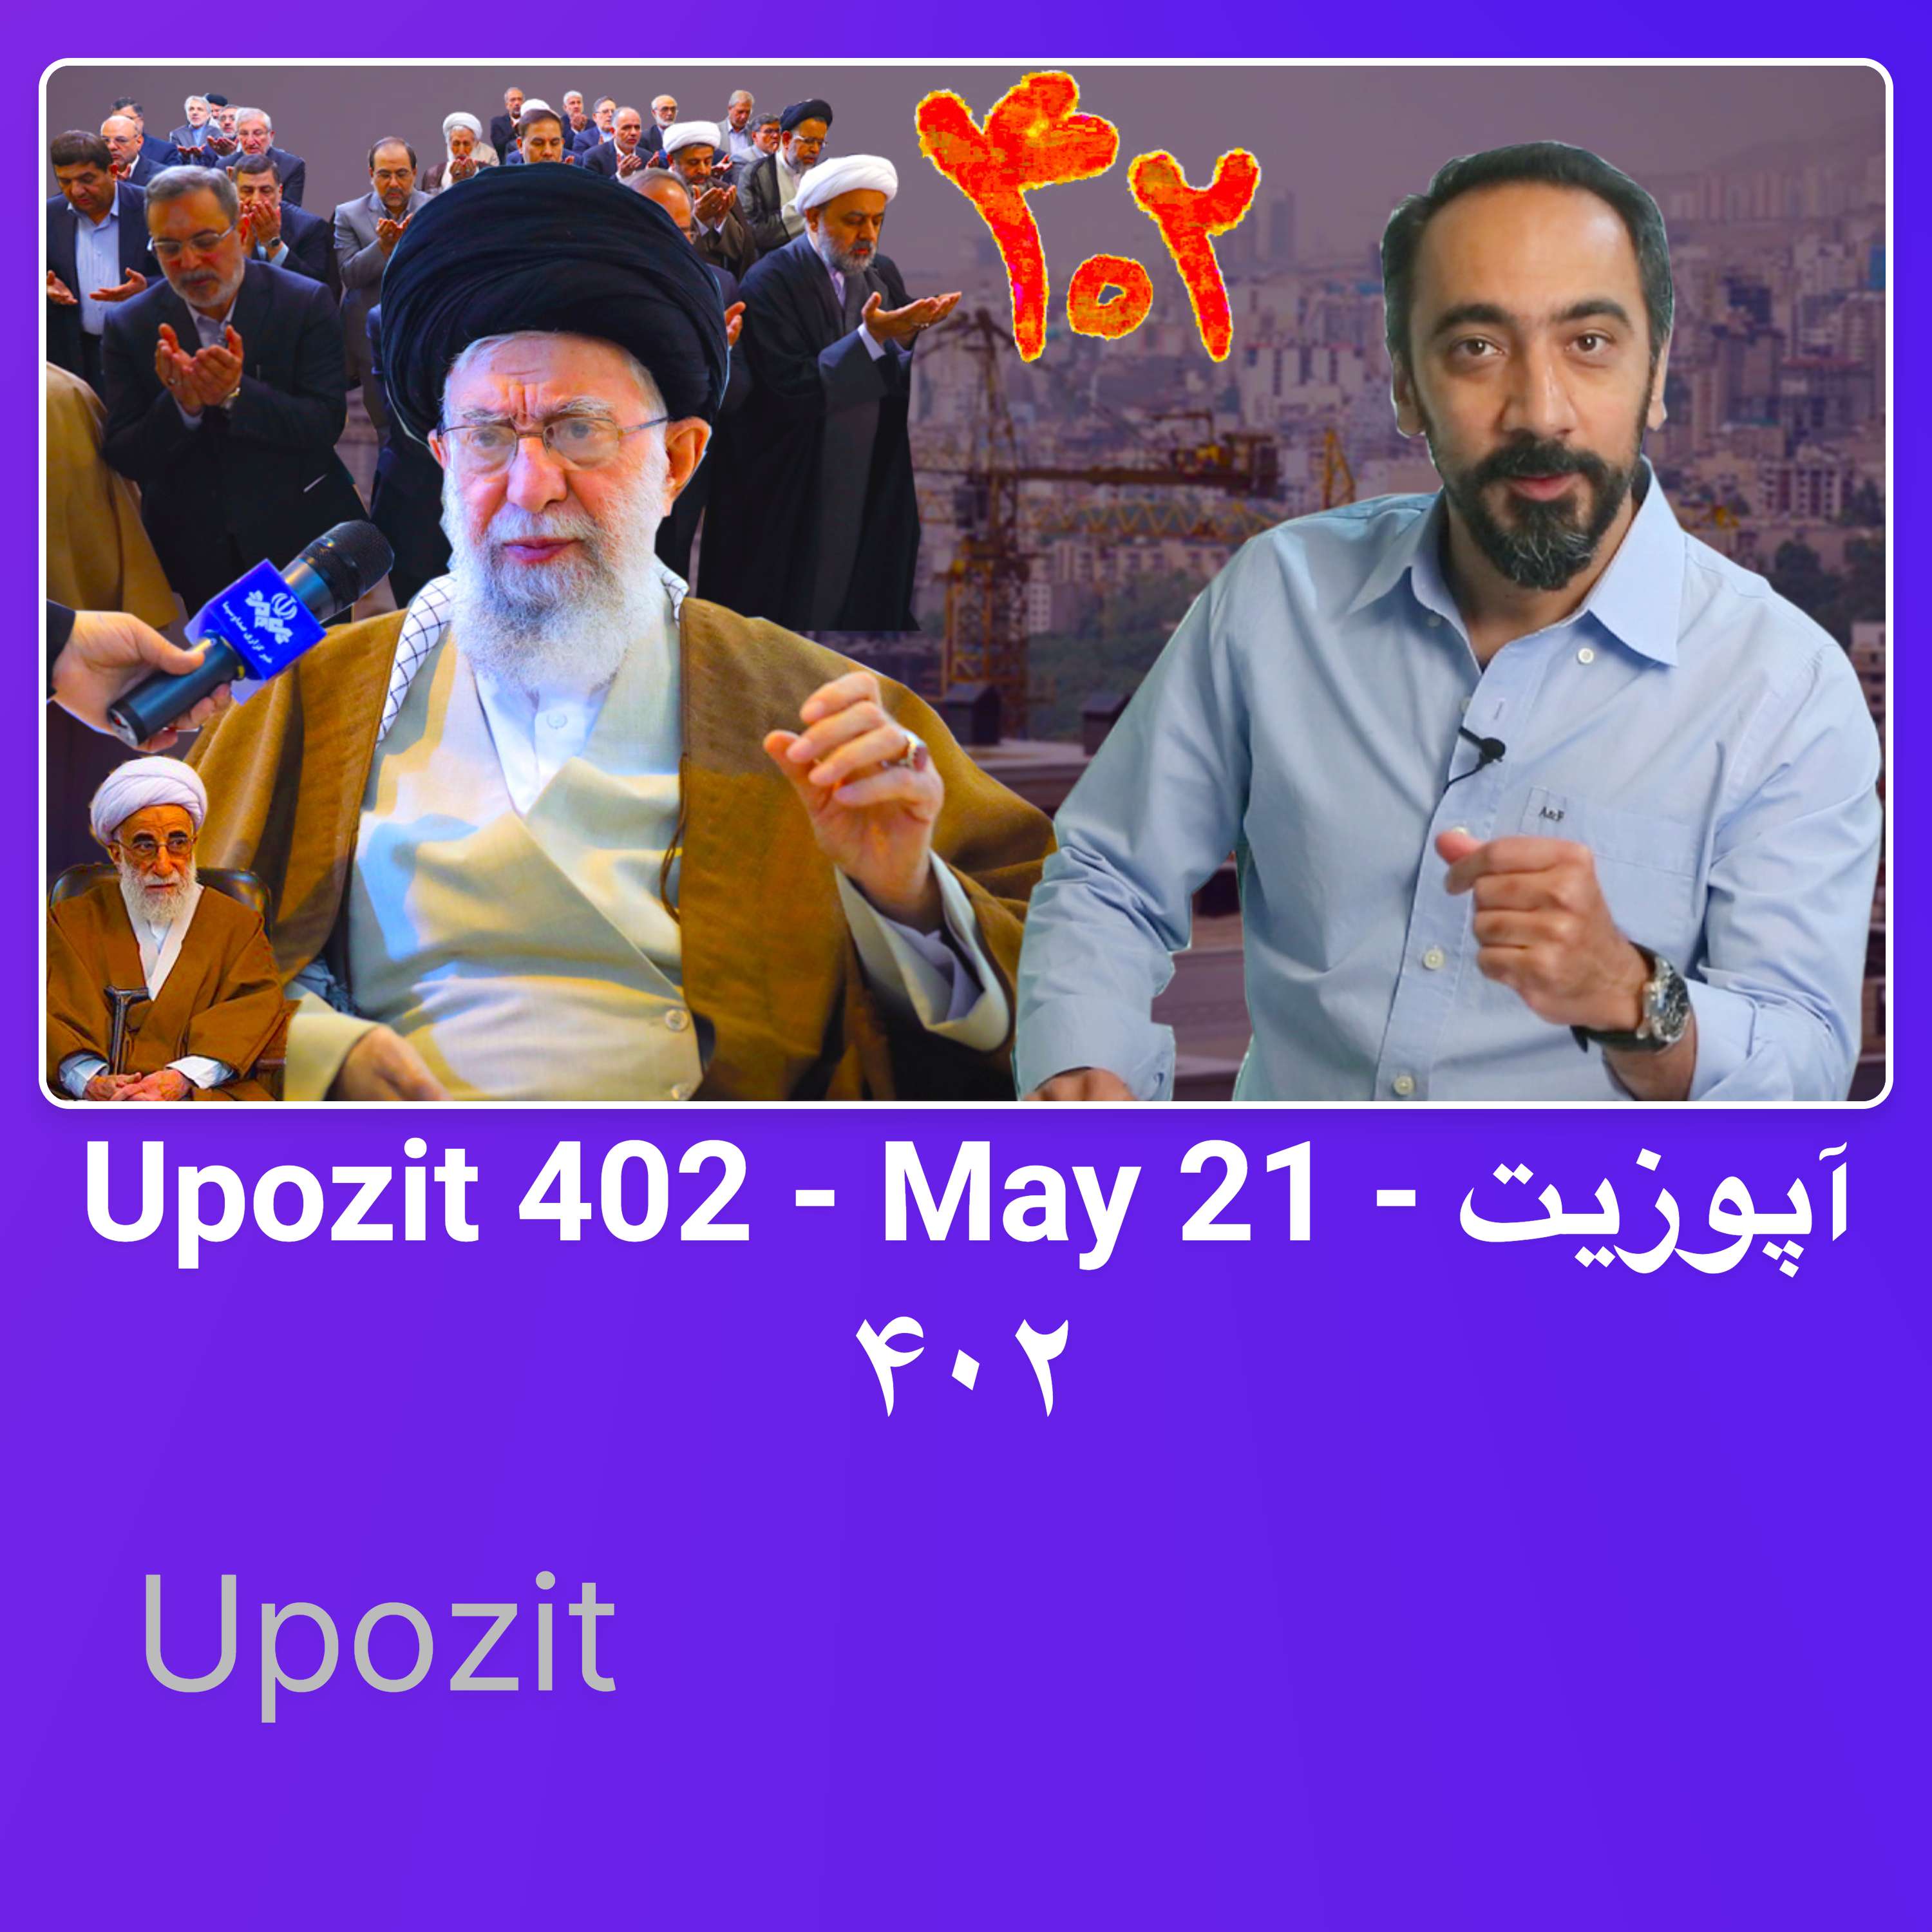 Upozit 402 - May 21 - آپوزیت ۴۰۲